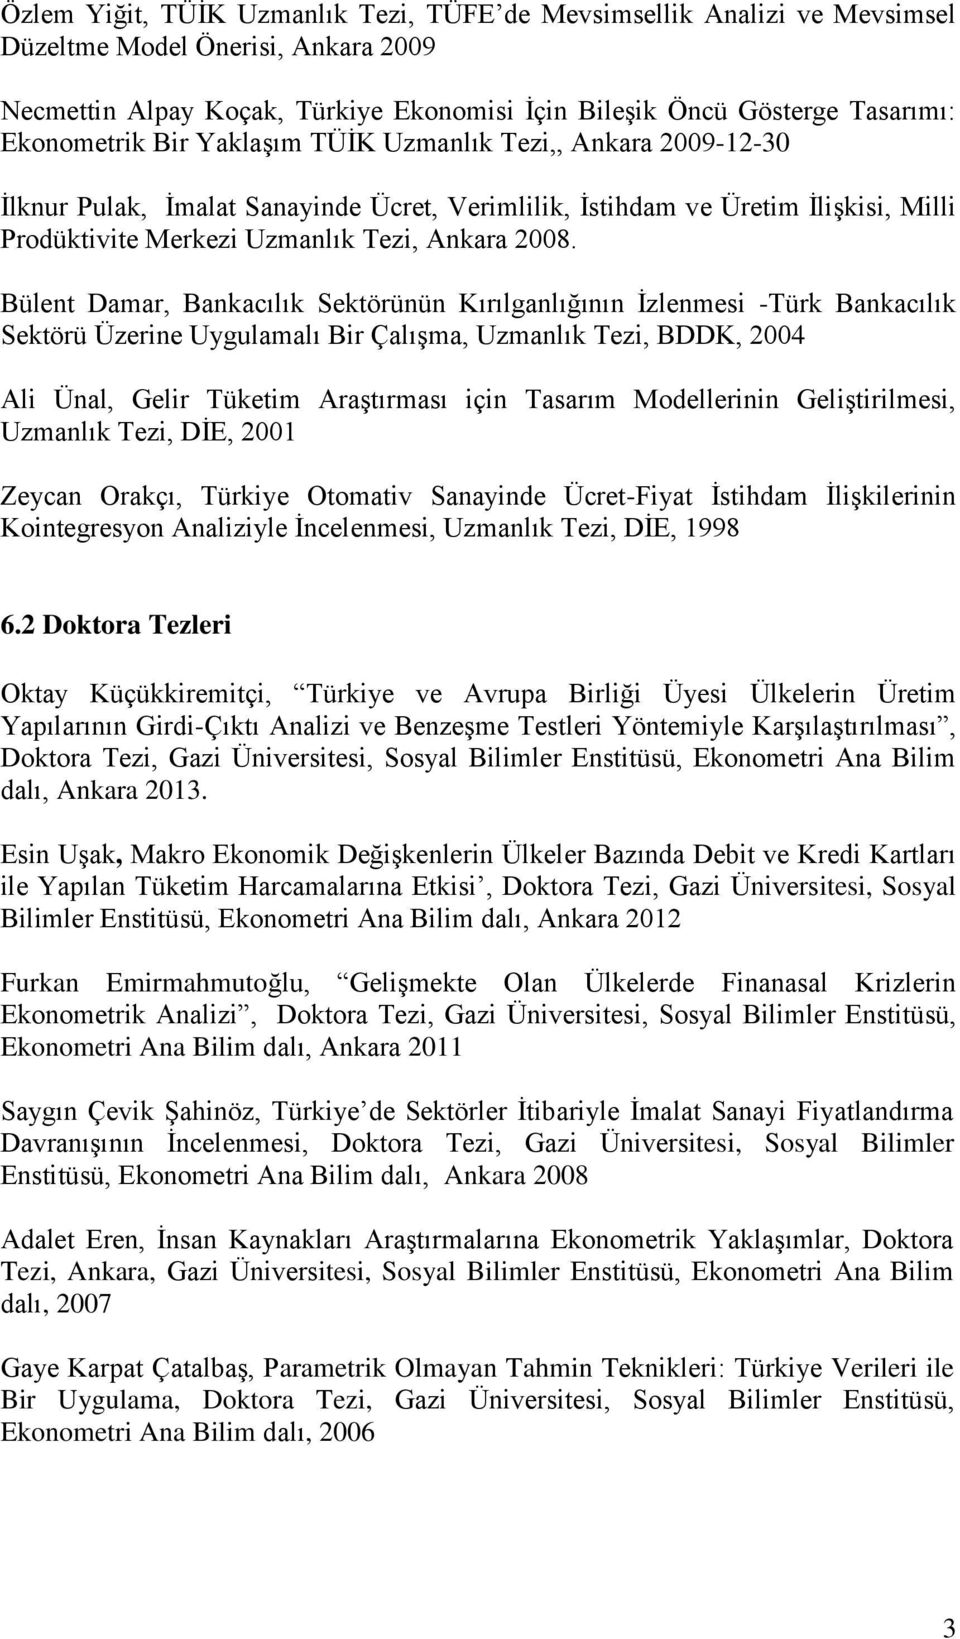 Bülent Damar, Bankacılık Sektörünün Kırılganlığının İzlenmesi -Türk Bankacılık Sektörü Üzerine Uygulamalı Bir Çalışma, Uzmanlık Tezi, BDDK, 2004 Ali Ünal, Gelir Tüketim Araştırması için Tasarım